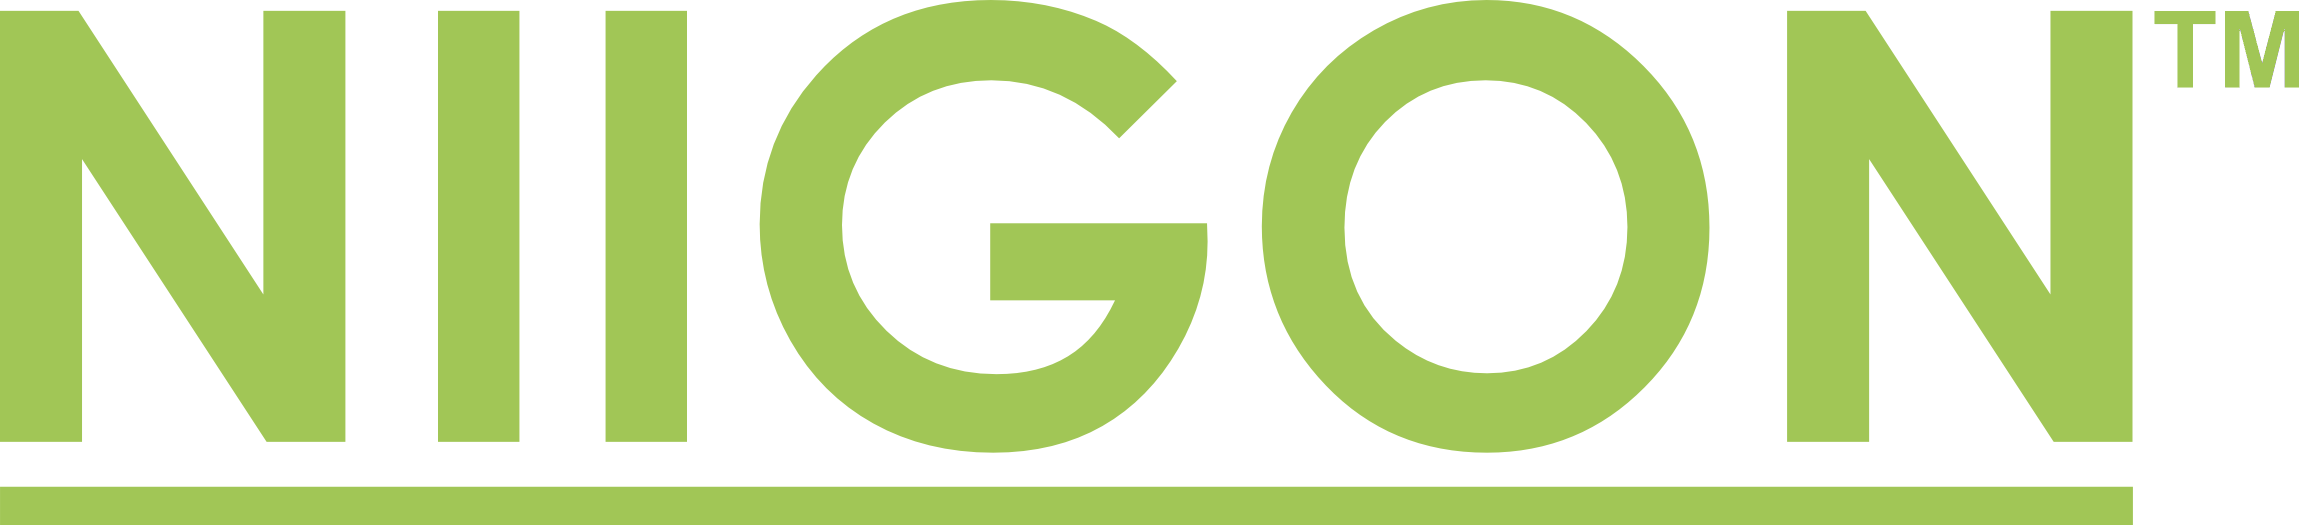 NIIGON_TM_logo_05_green_plain-ARG